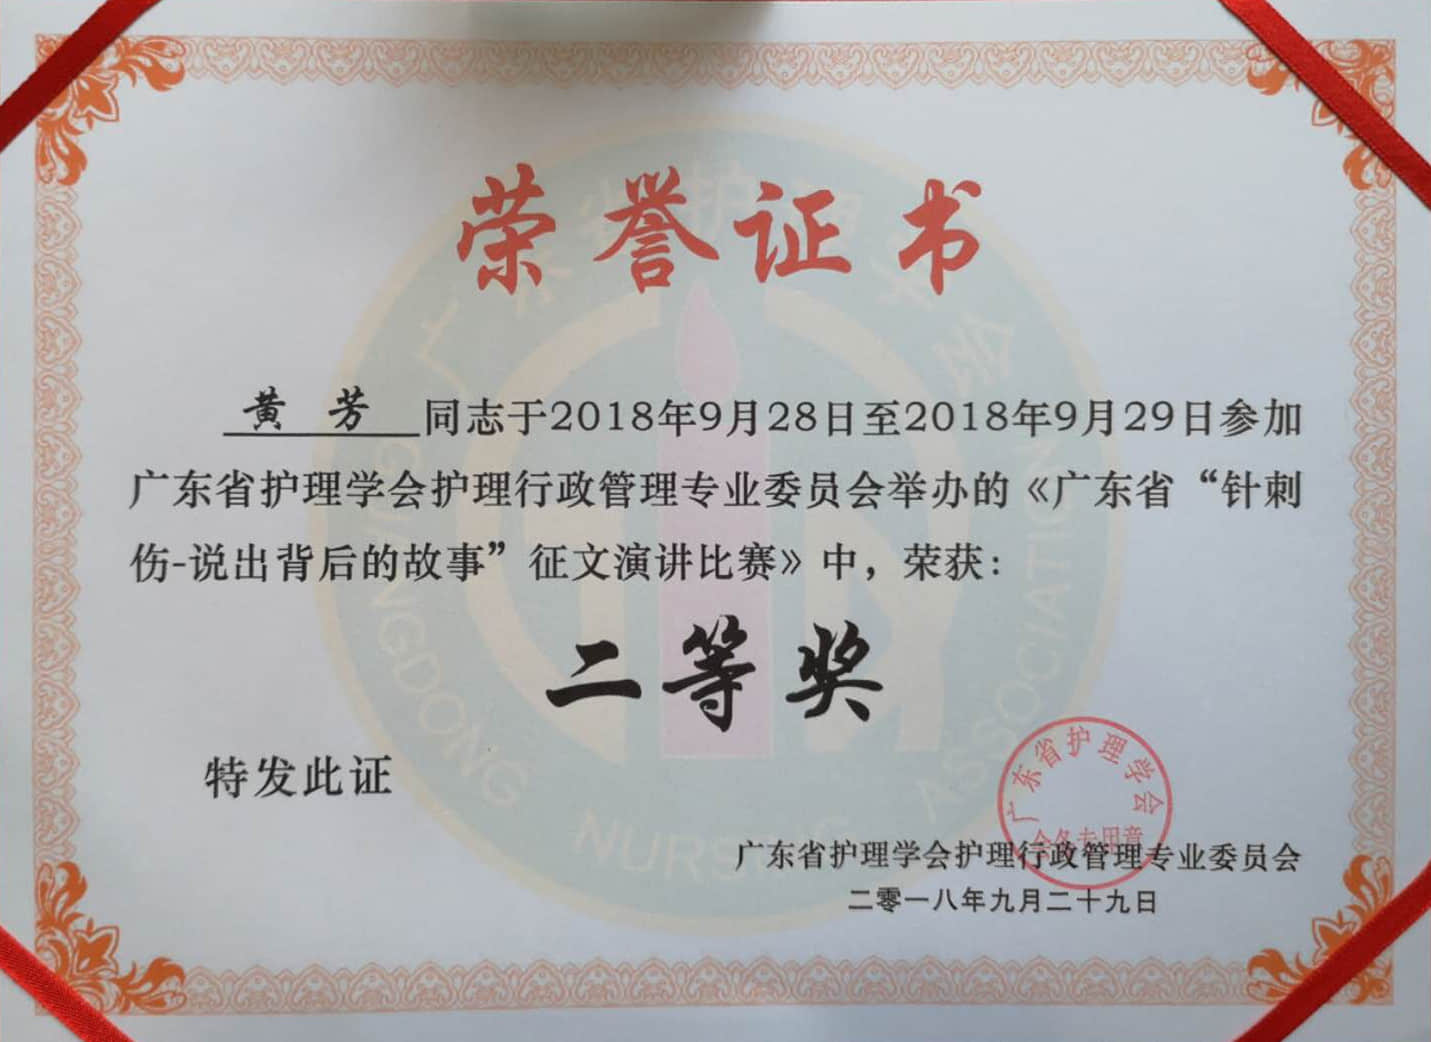 我院荣获广东省“针刺伤防护——说出背后的故事”征文演讲比赛二等奖